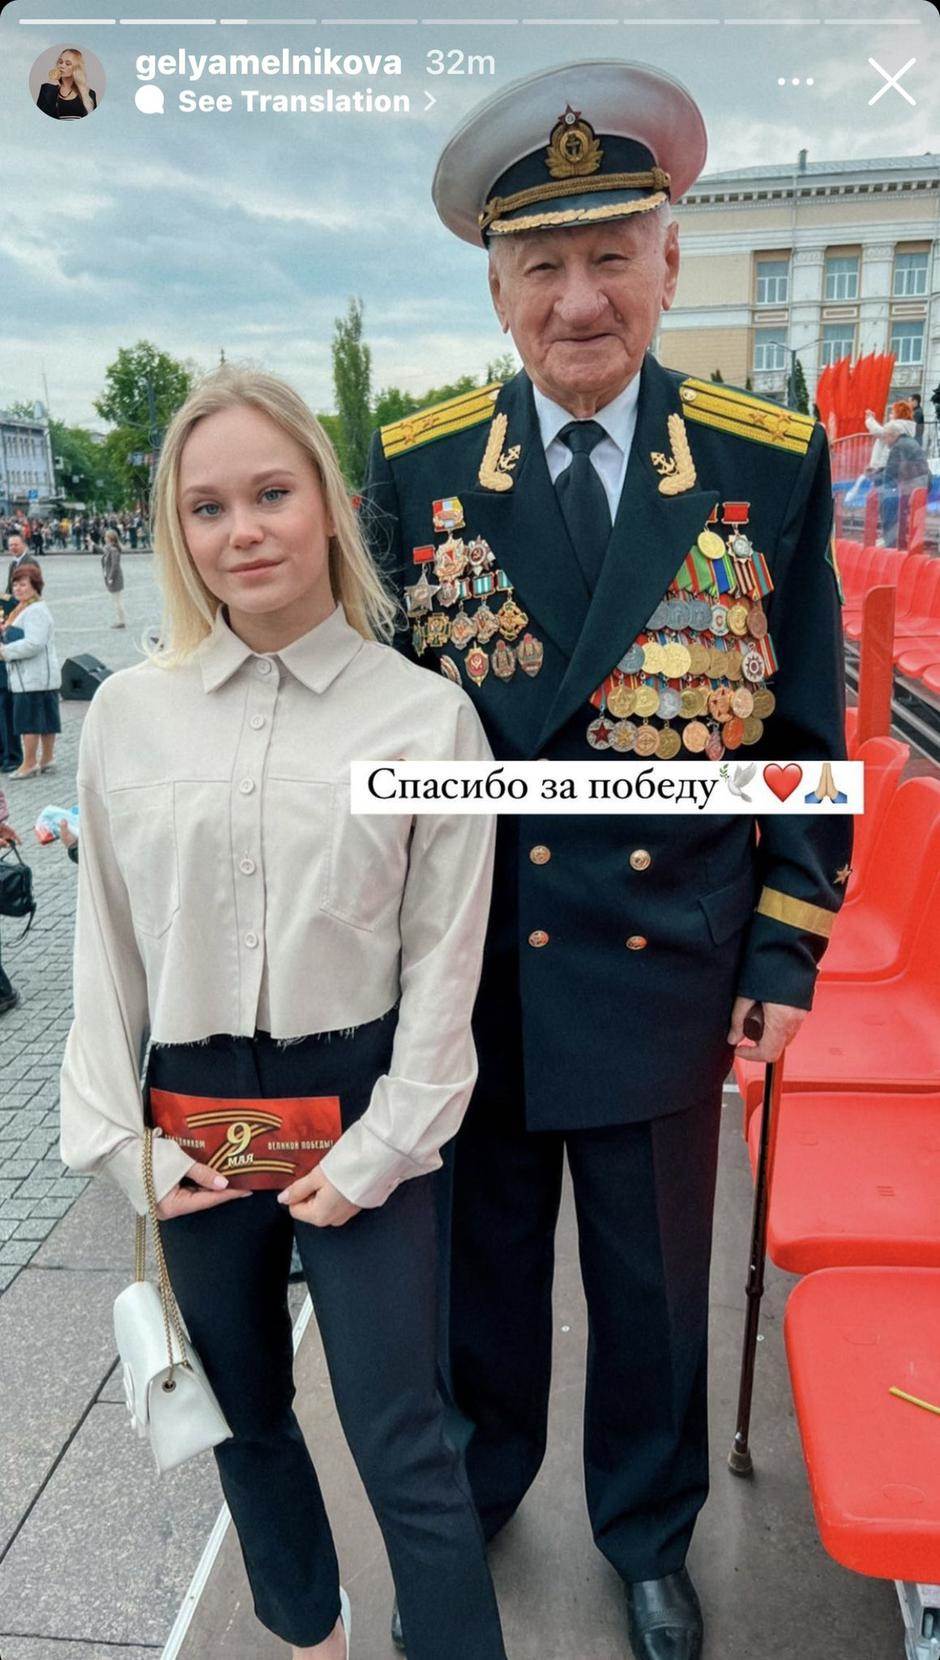  Angelina Meljenikova privukla pažnju javnosti 